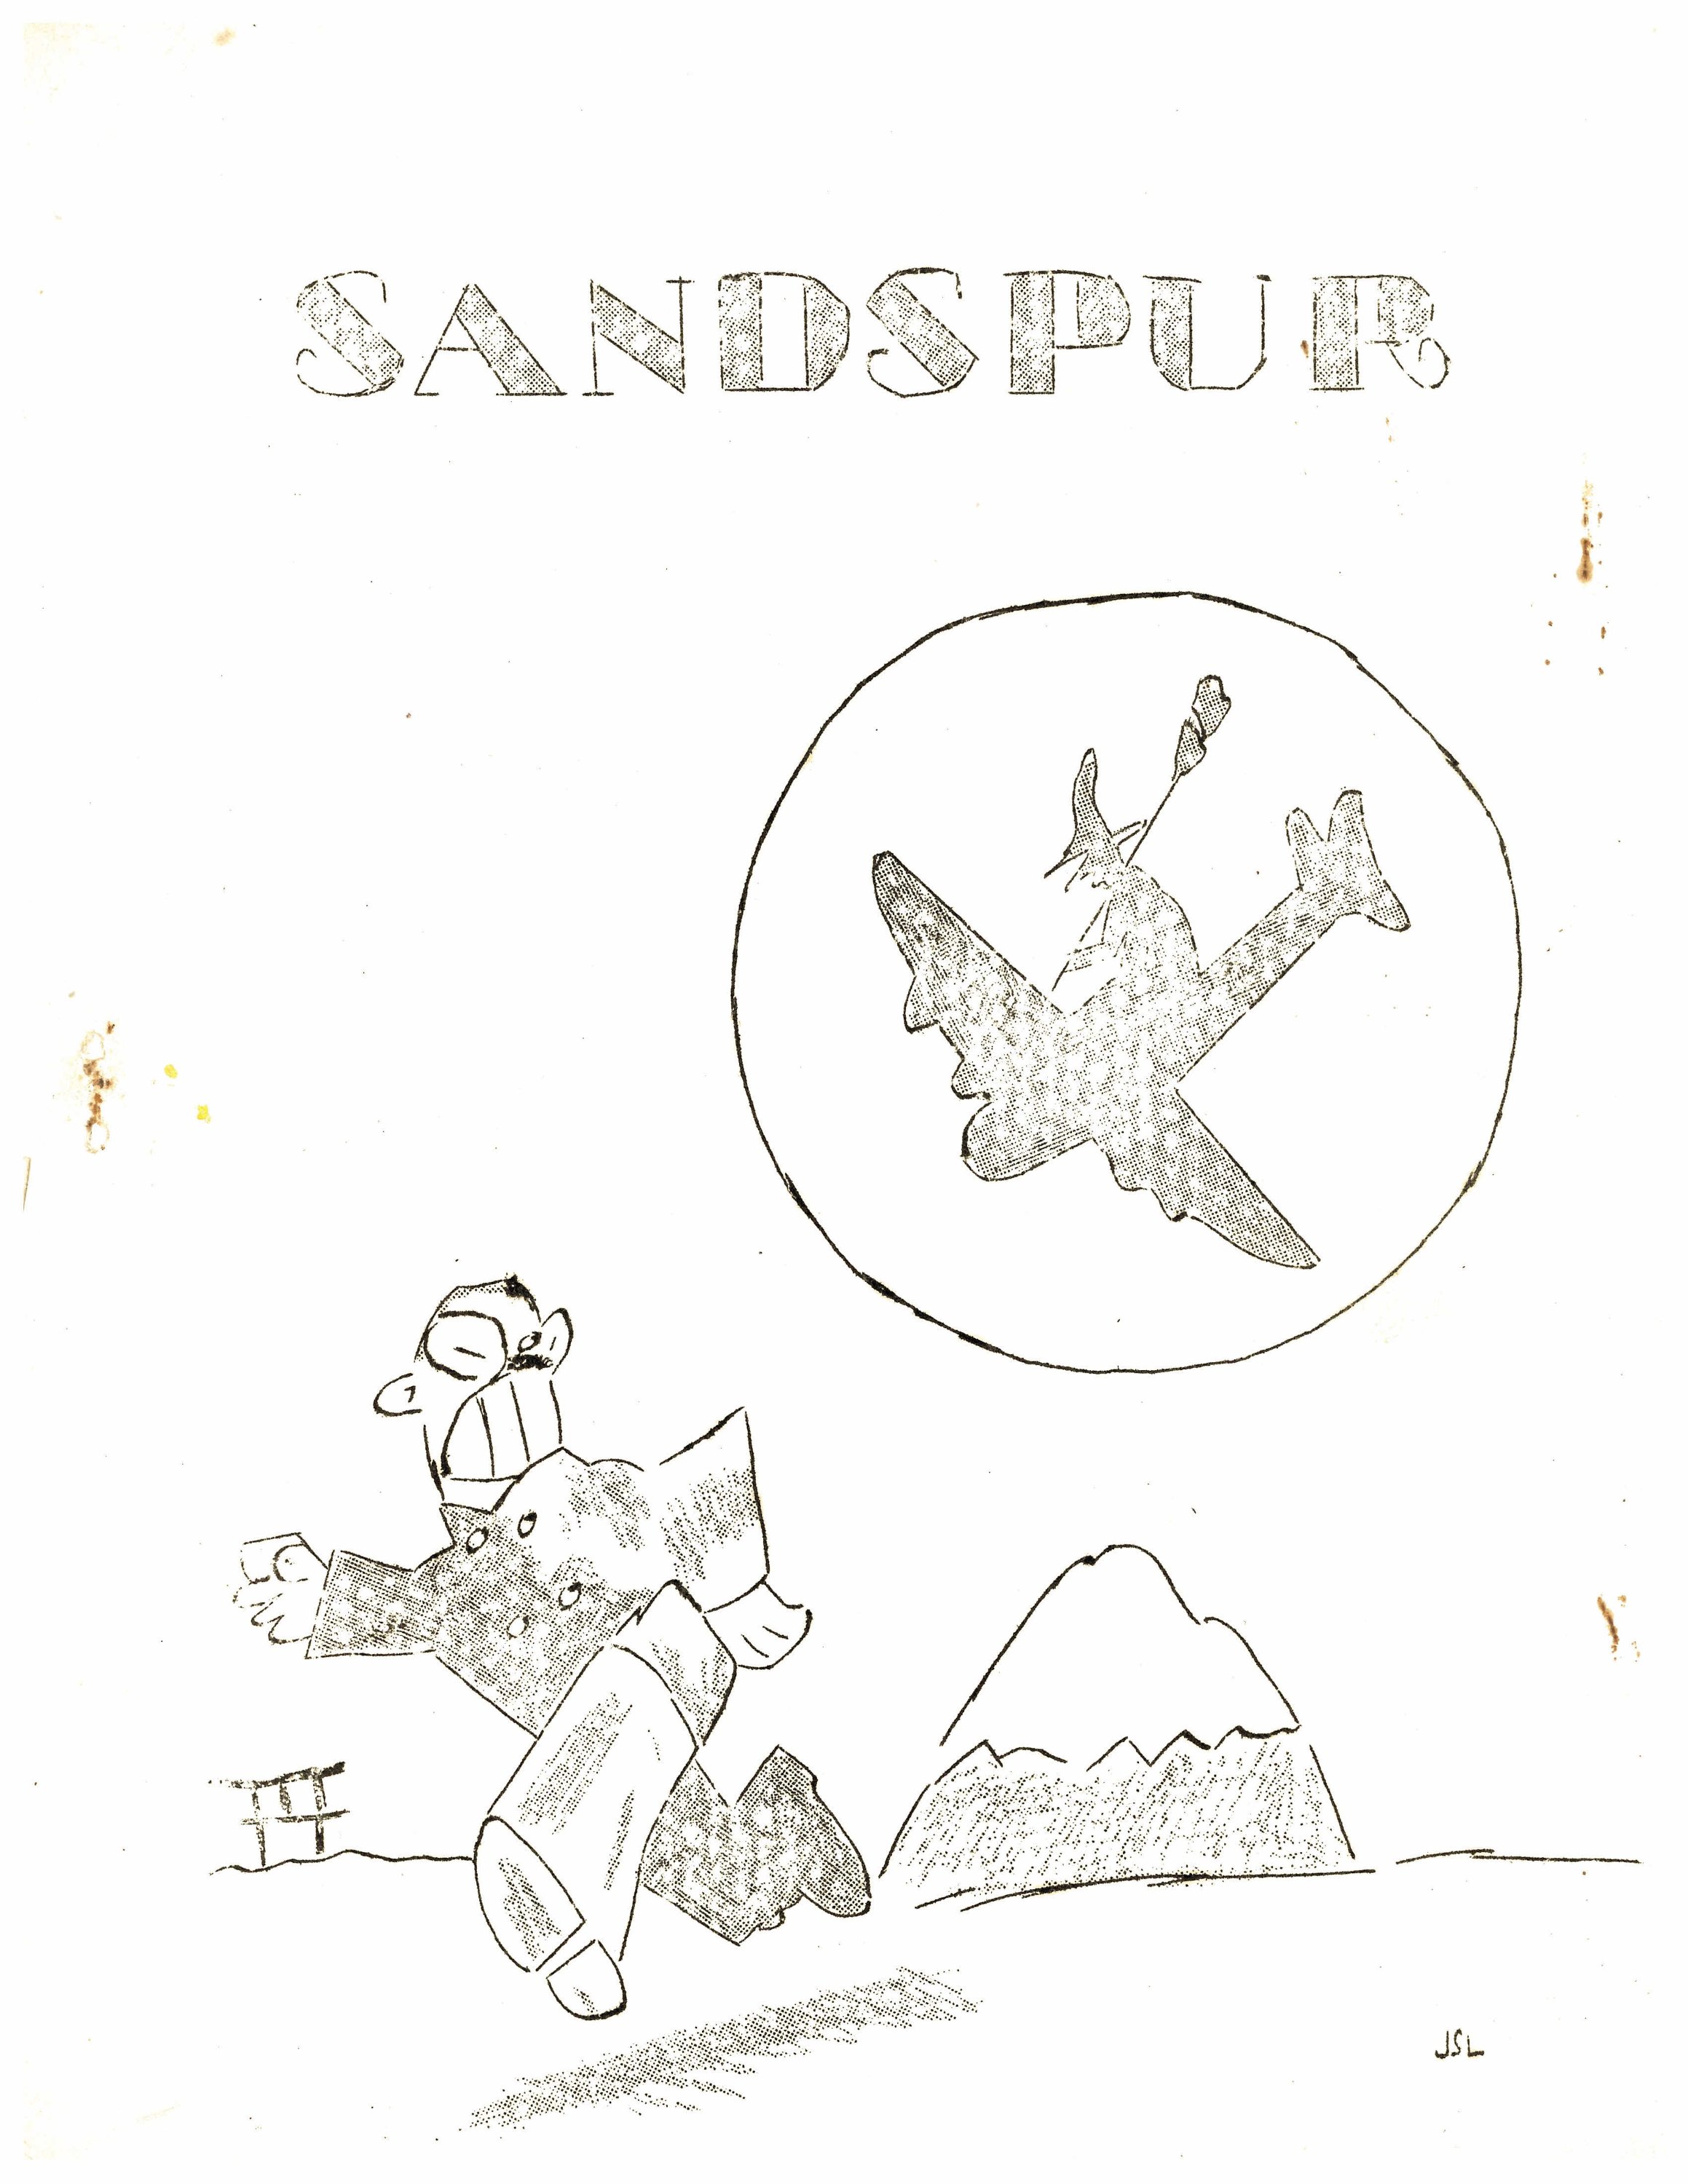 Sandspur October 31, 1943.jpg